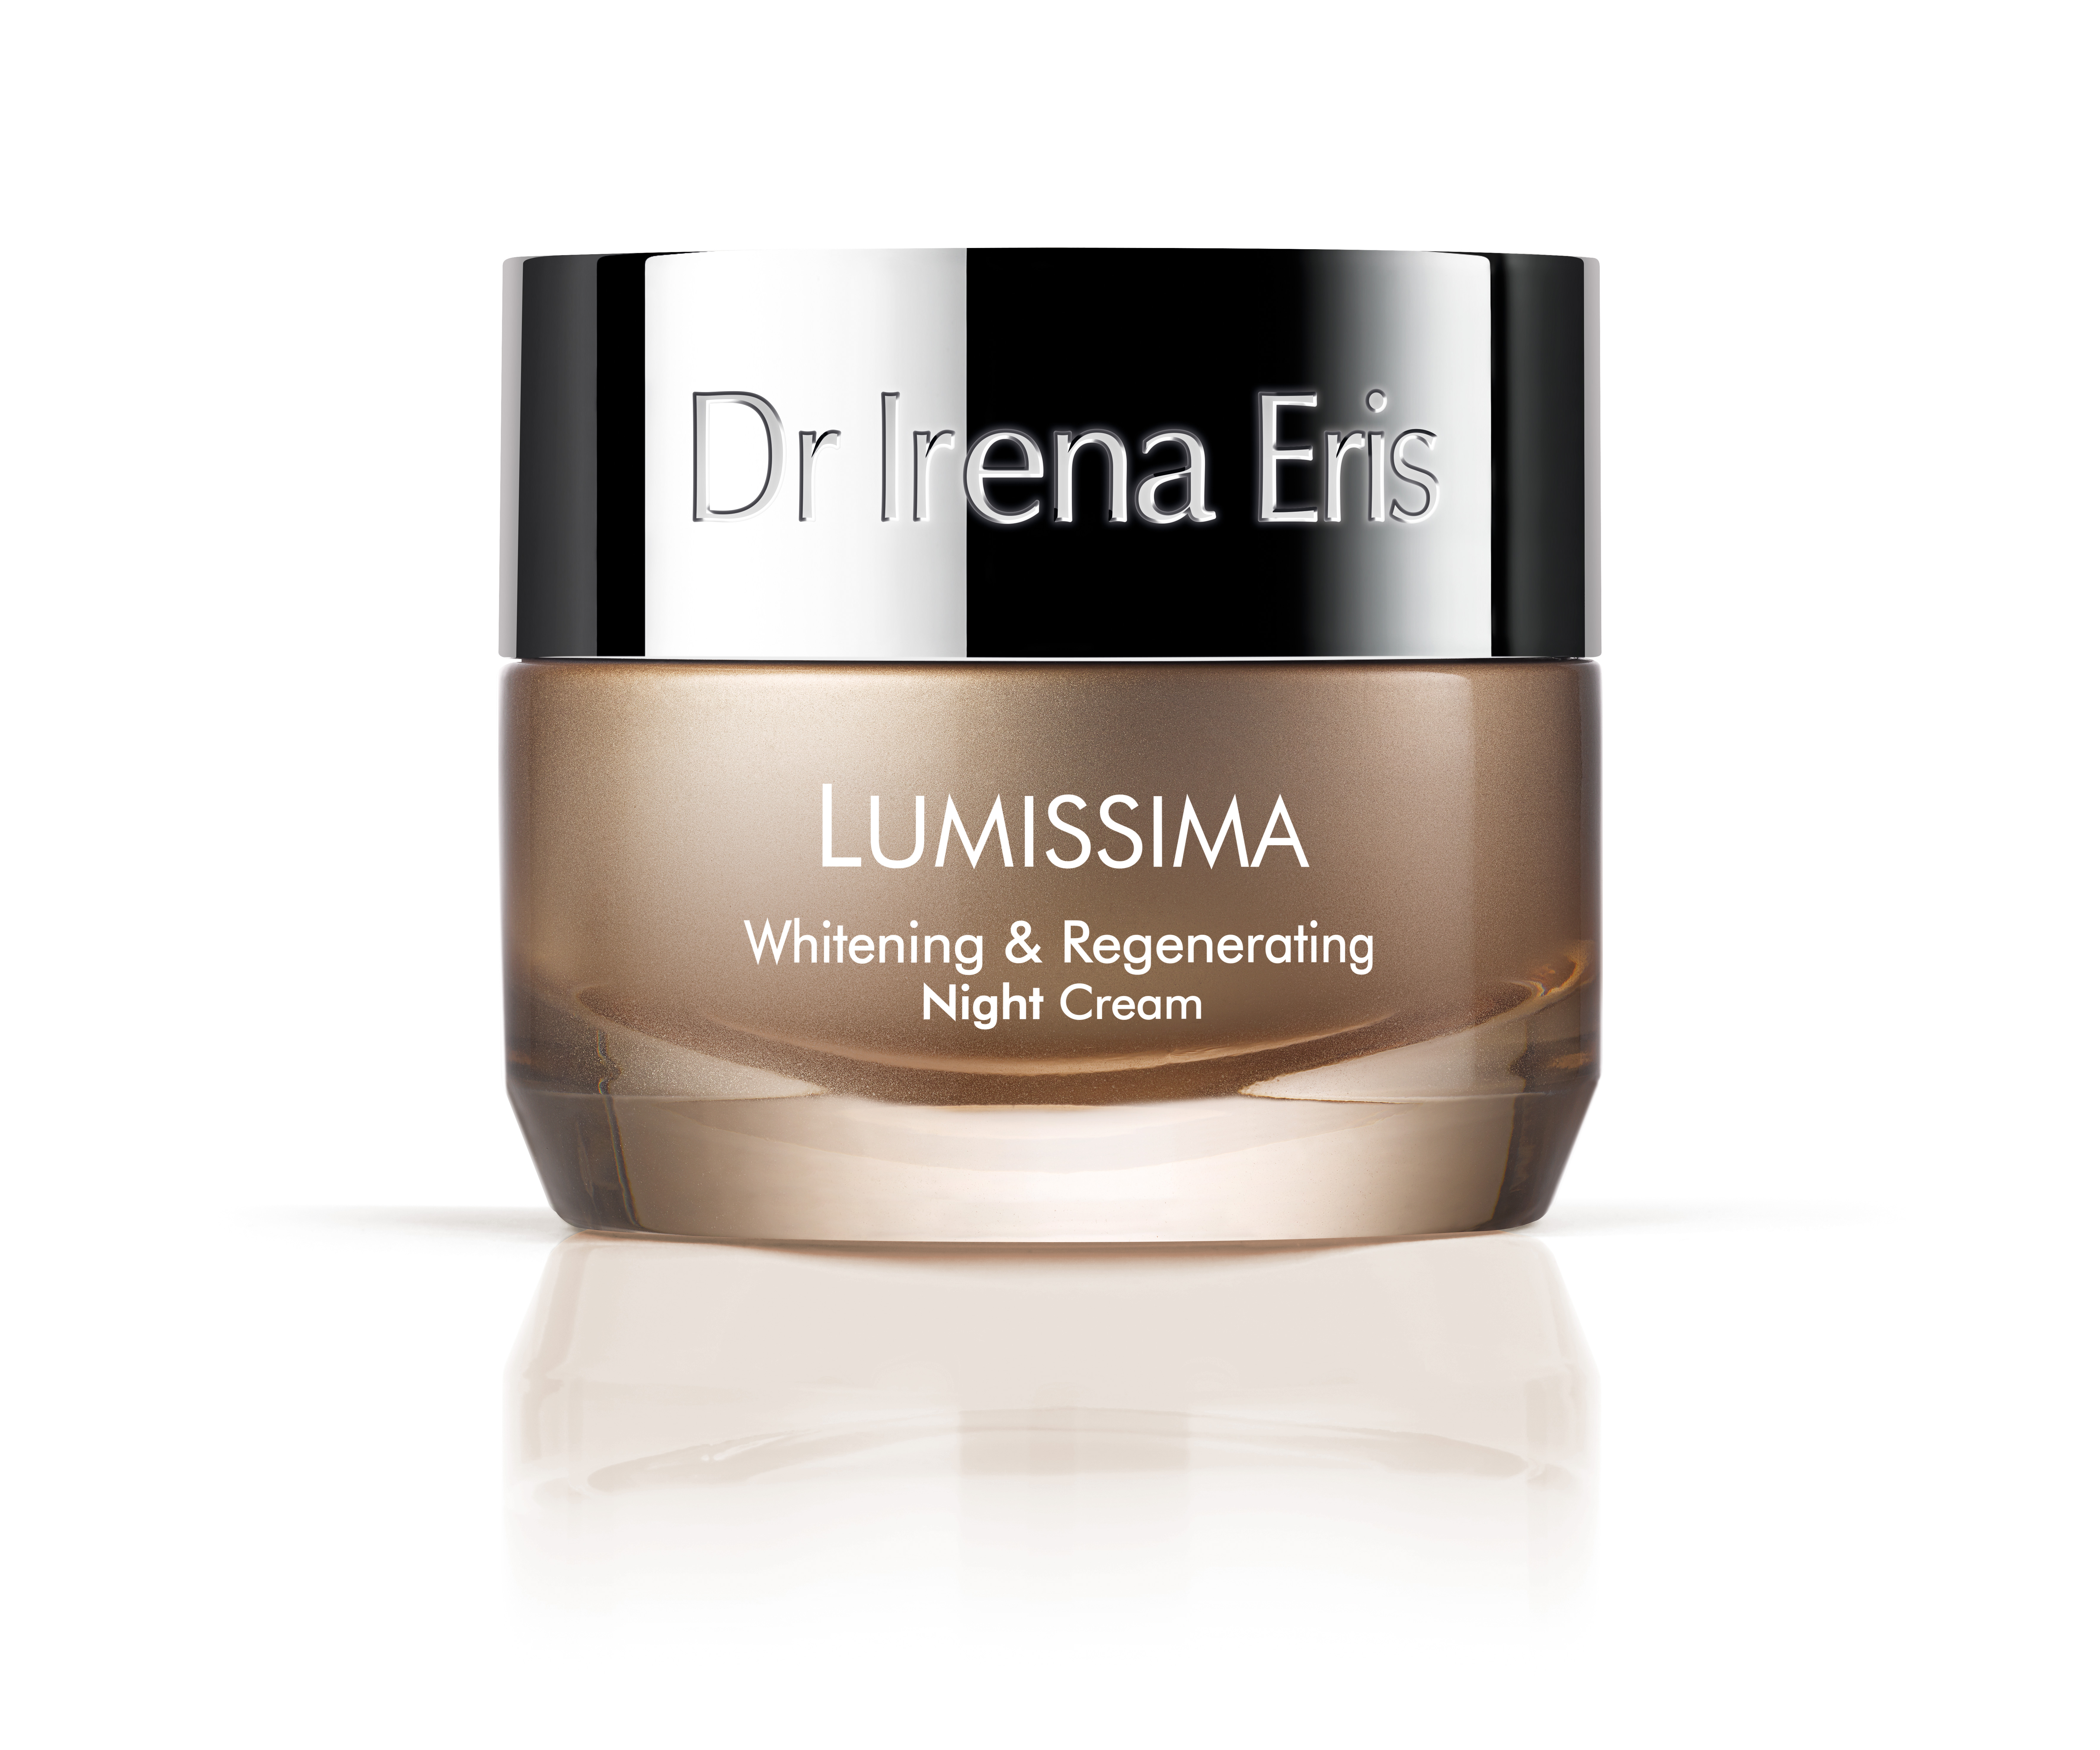 Lumissima Whitening & Regenerating Night Cream